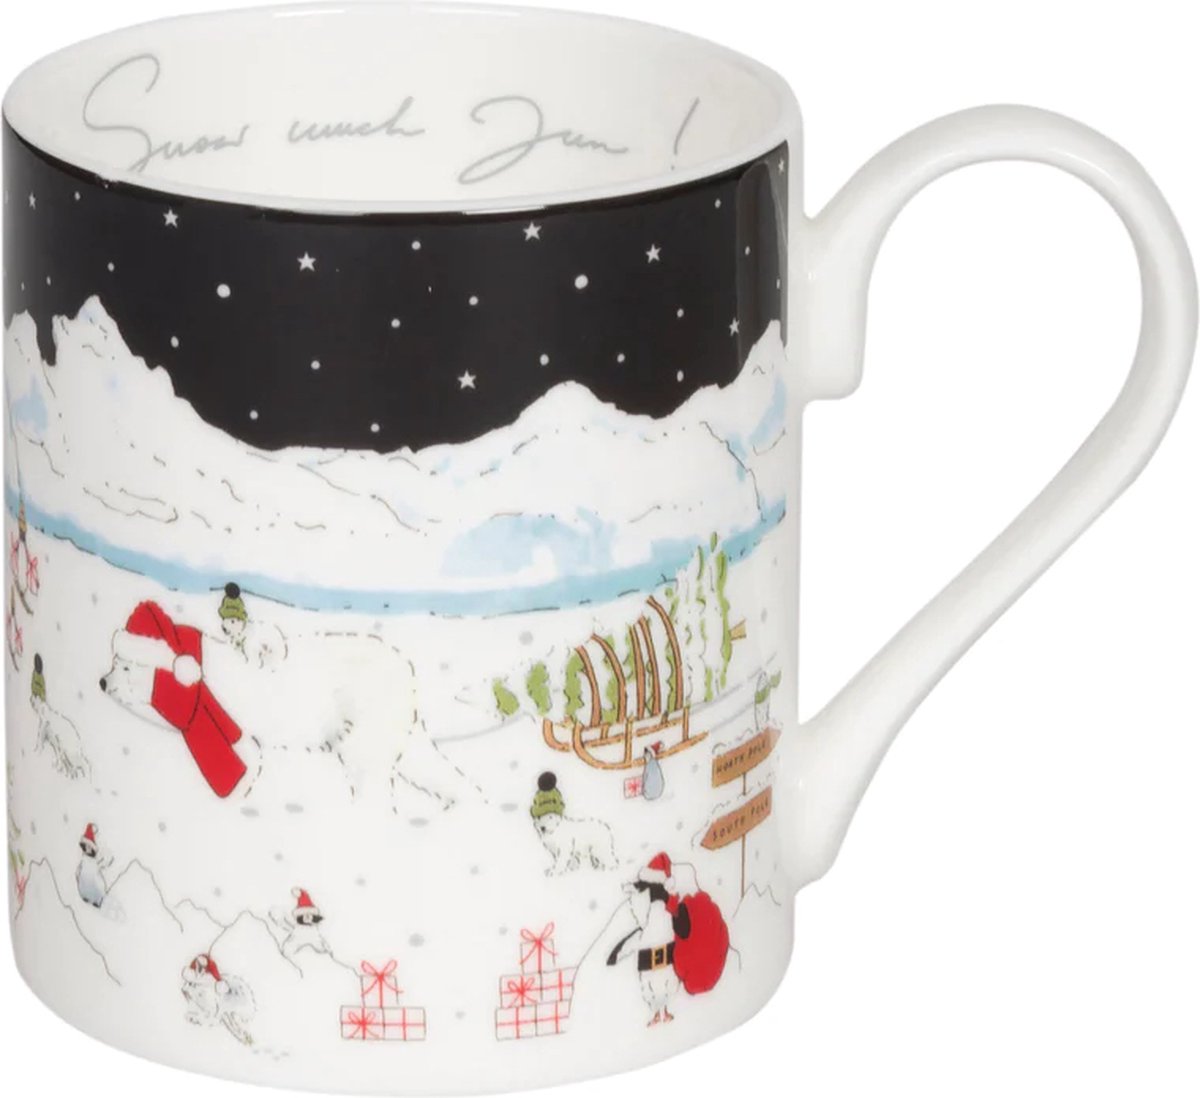 Sneeuwseizoen Mok van Sophie Allport - Kerstbeker met ijsberen en pinguïns - kopje voor koffie of thee